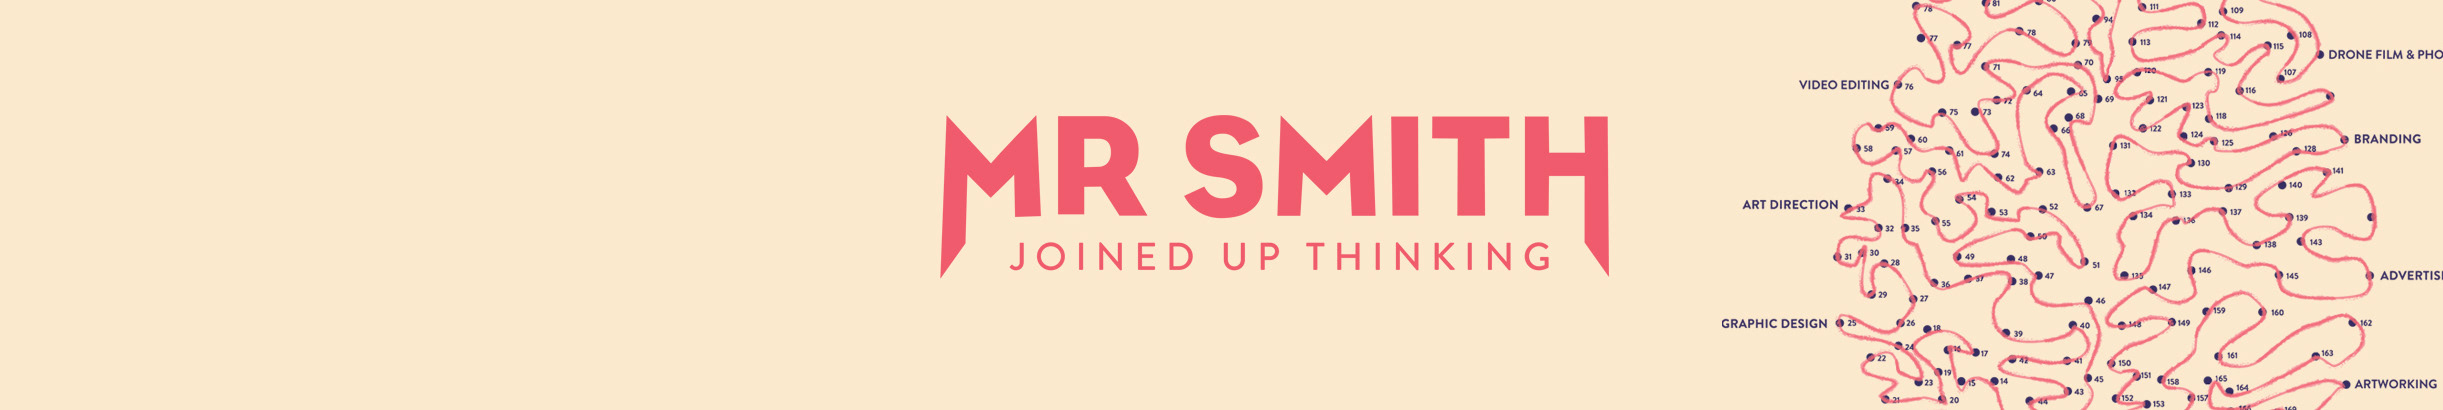 Mr Smith Creative's profile banner